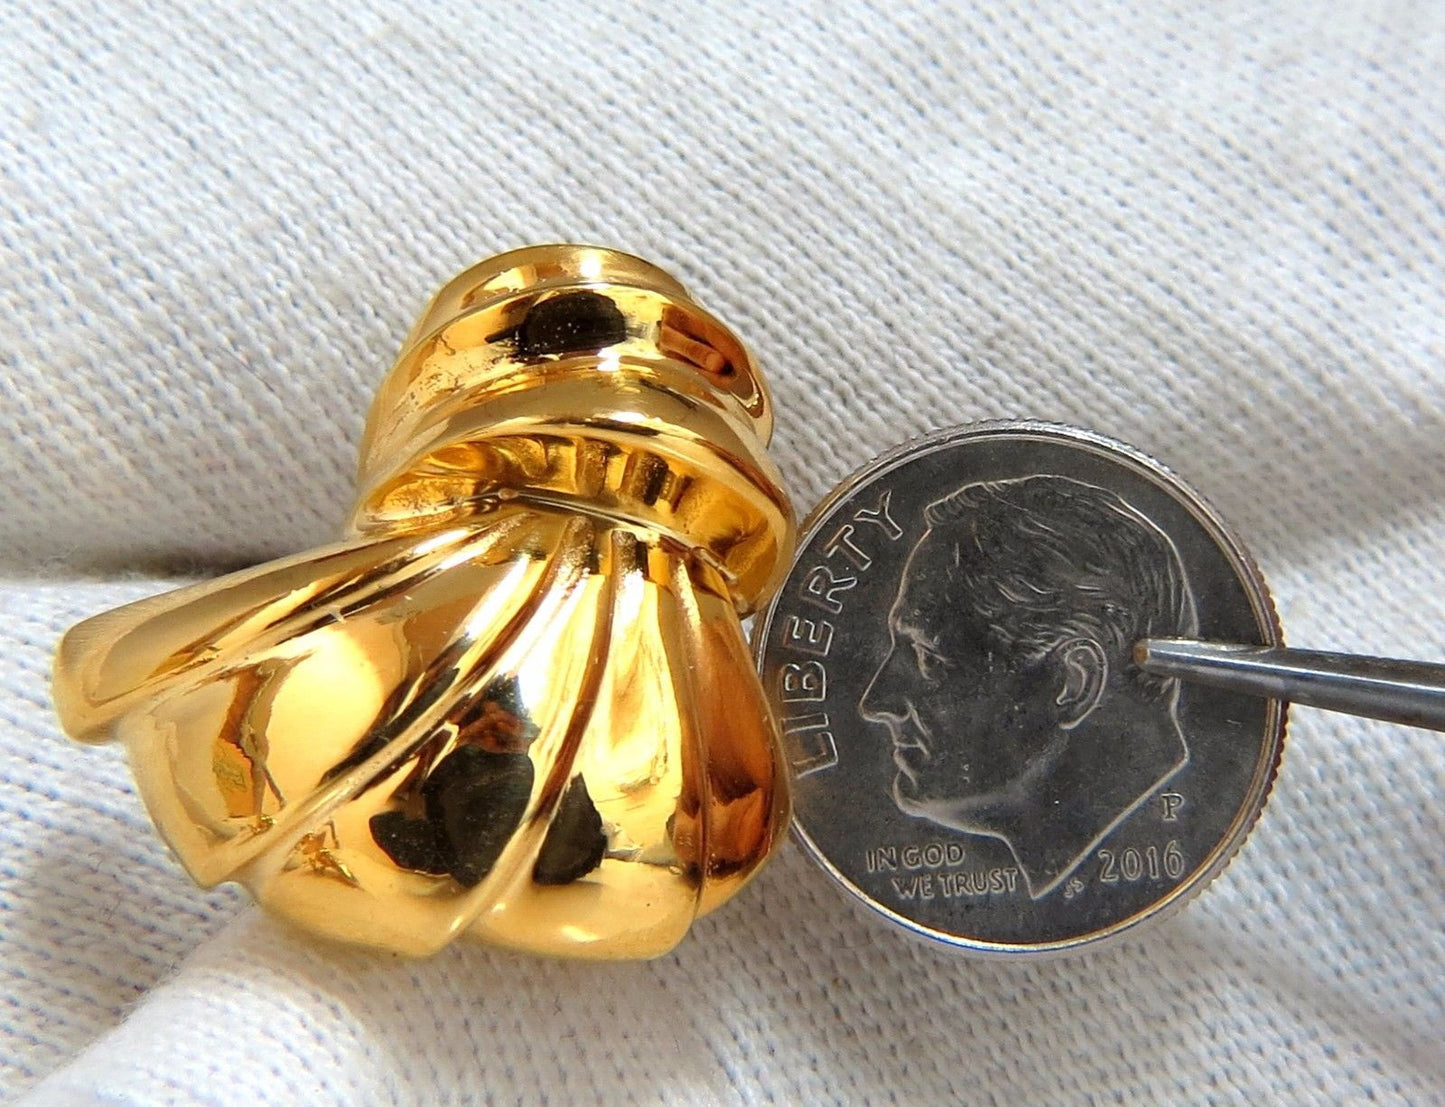 14kt shell form 3d clip on earrings 19 gram